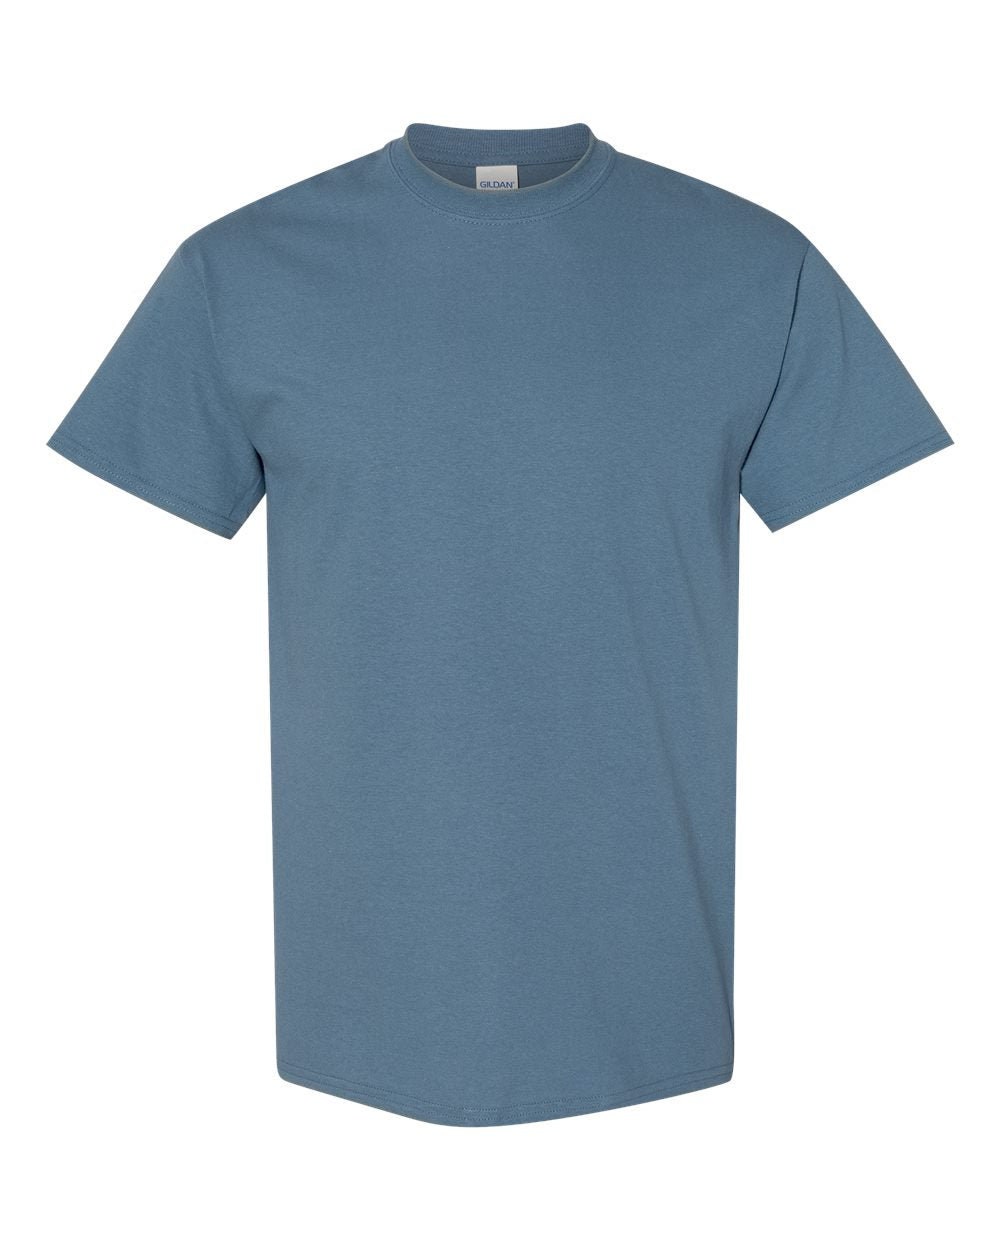 Gildan Heavy Cotton T-shirt G500 Unisex Shirt DIY Blank - Etsy